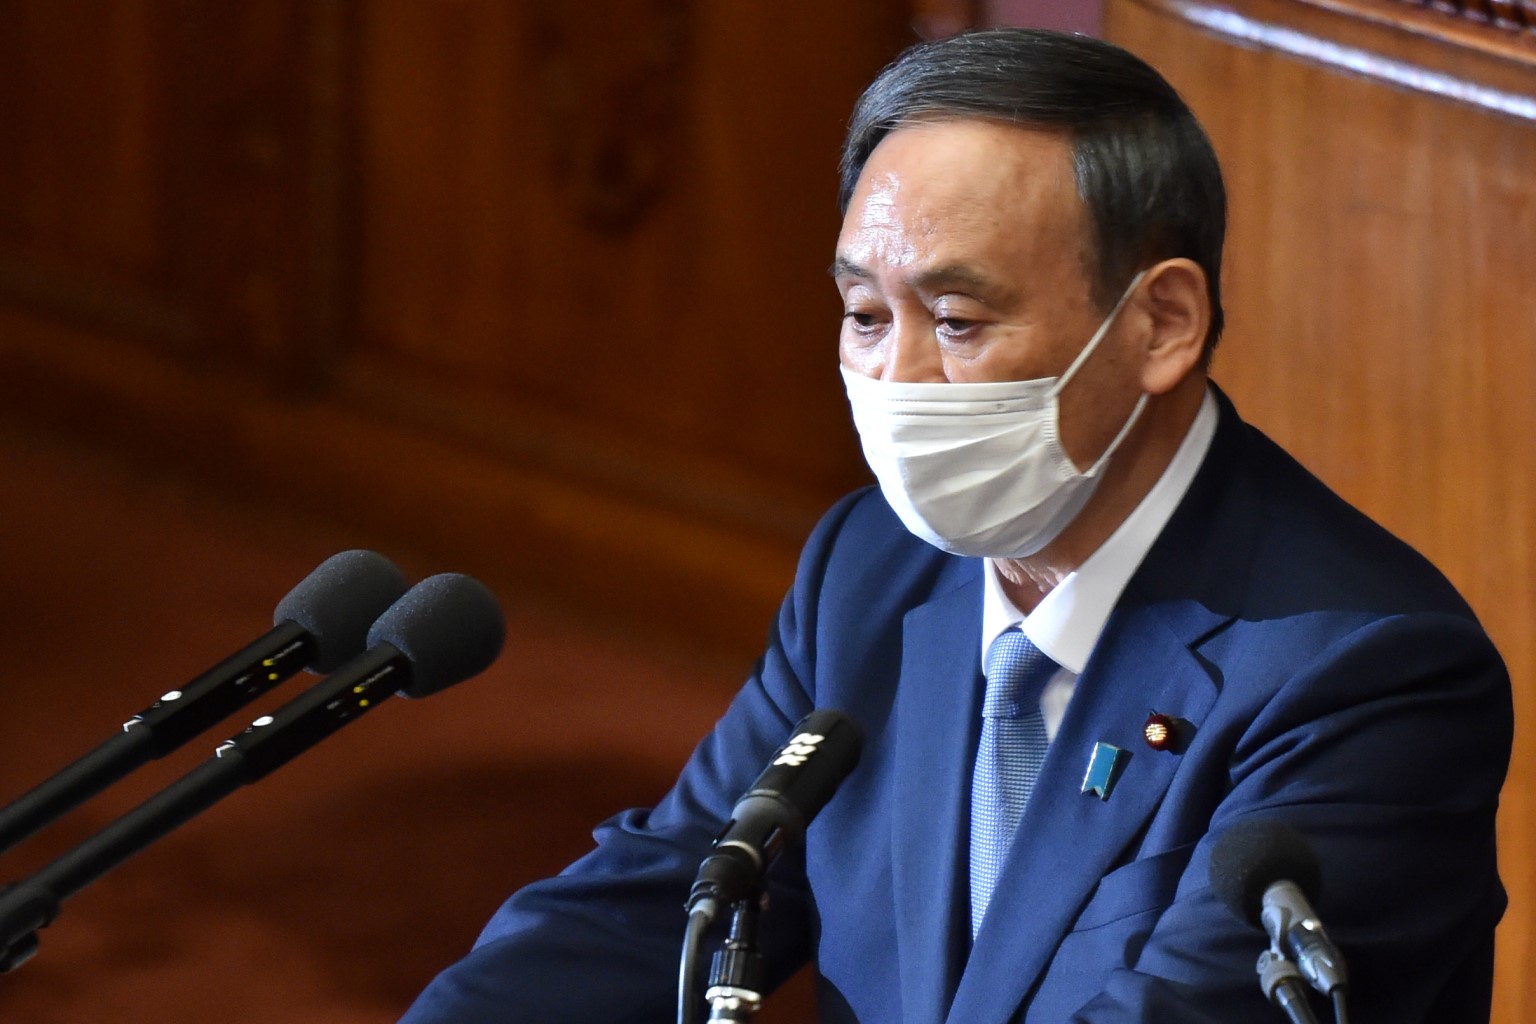 Новый японский премьер намерен поставить точку в переговорах о Курилах